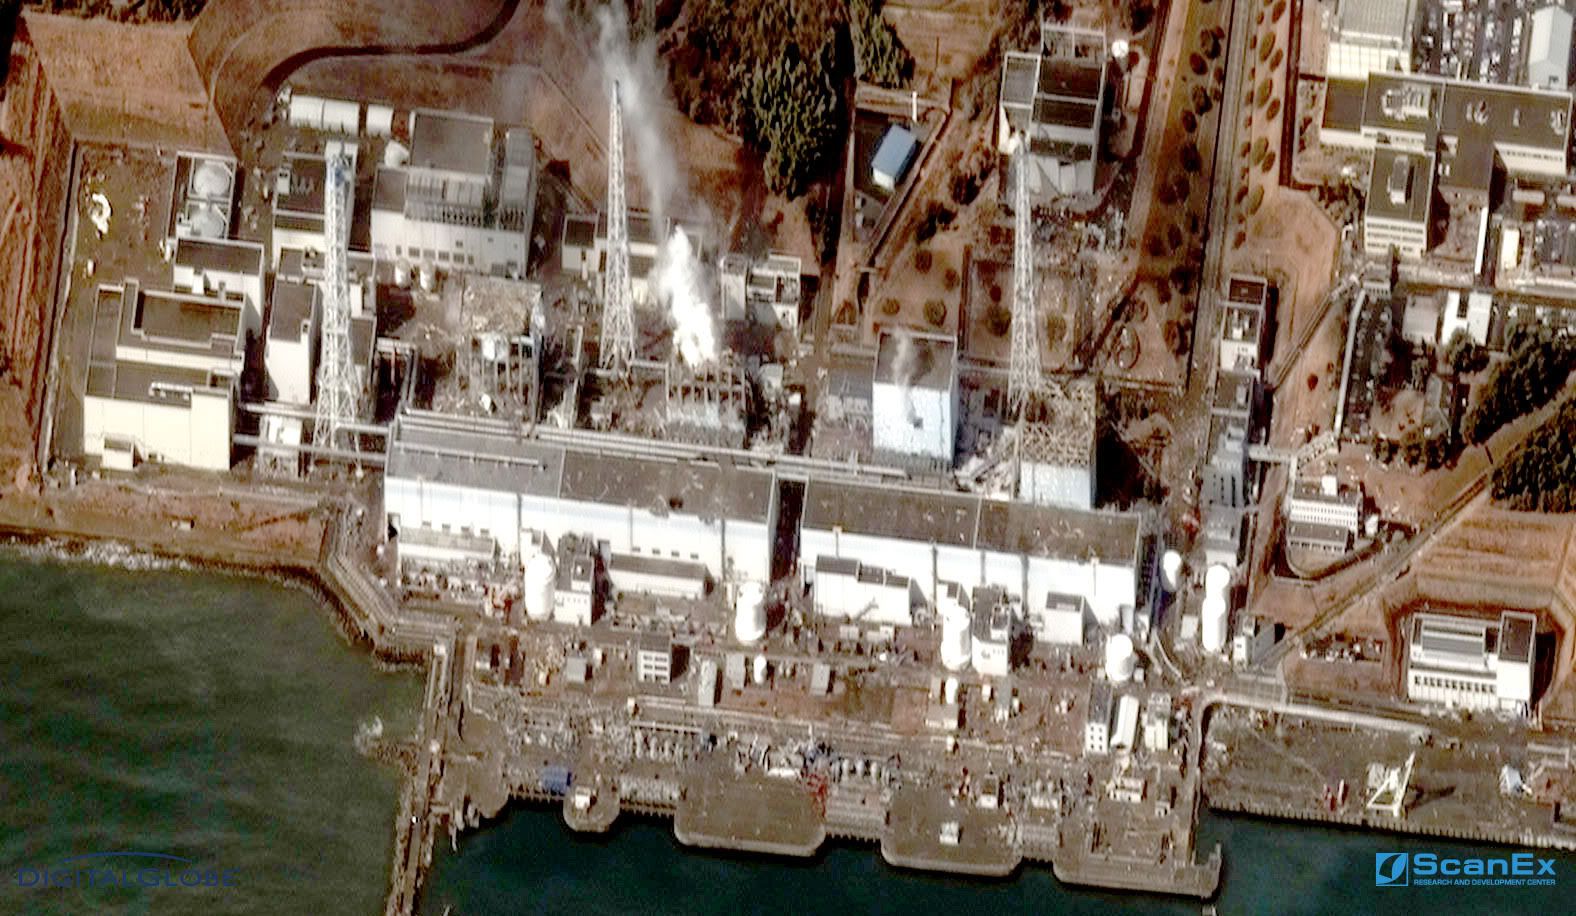 Fukushima-1. 16.03.2011